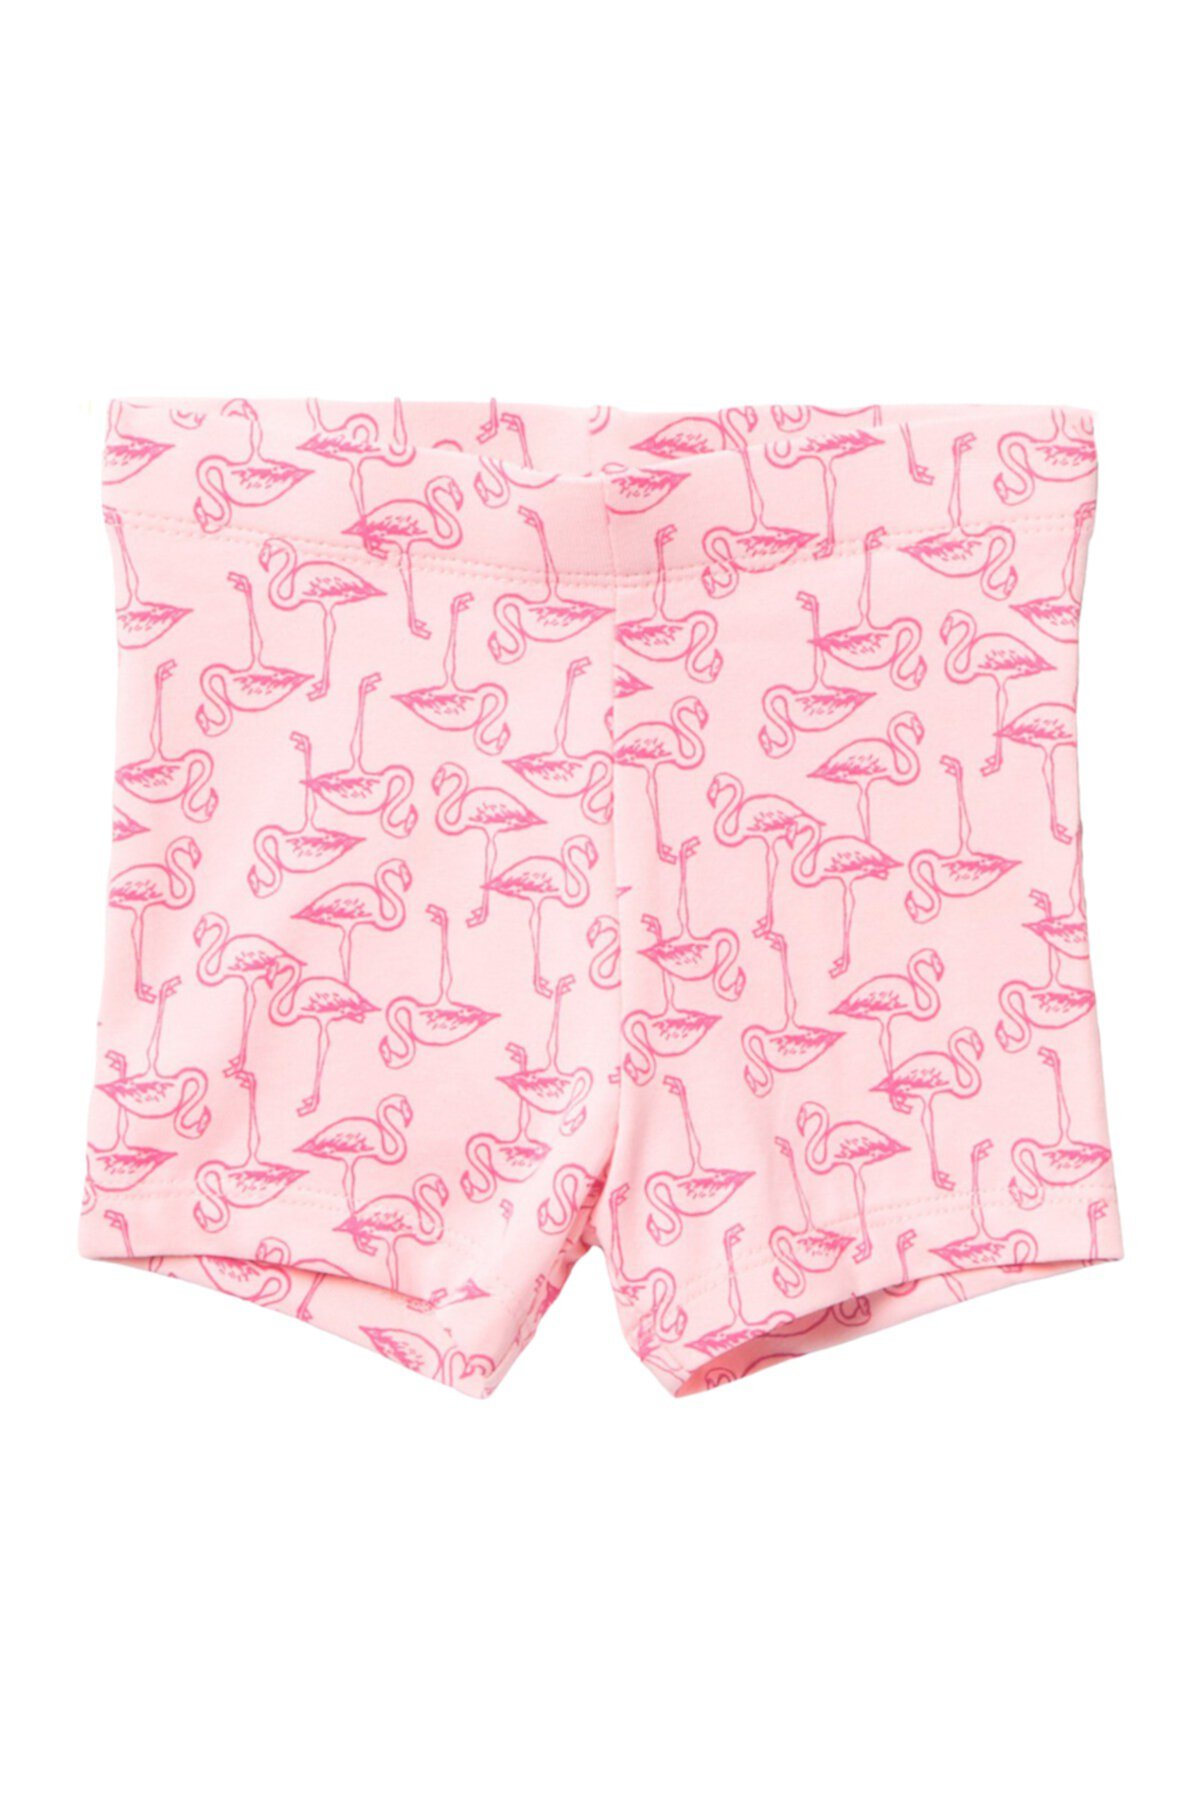 Велосипедные шорты с принтом фламинго (для девочек) Joe Fresh